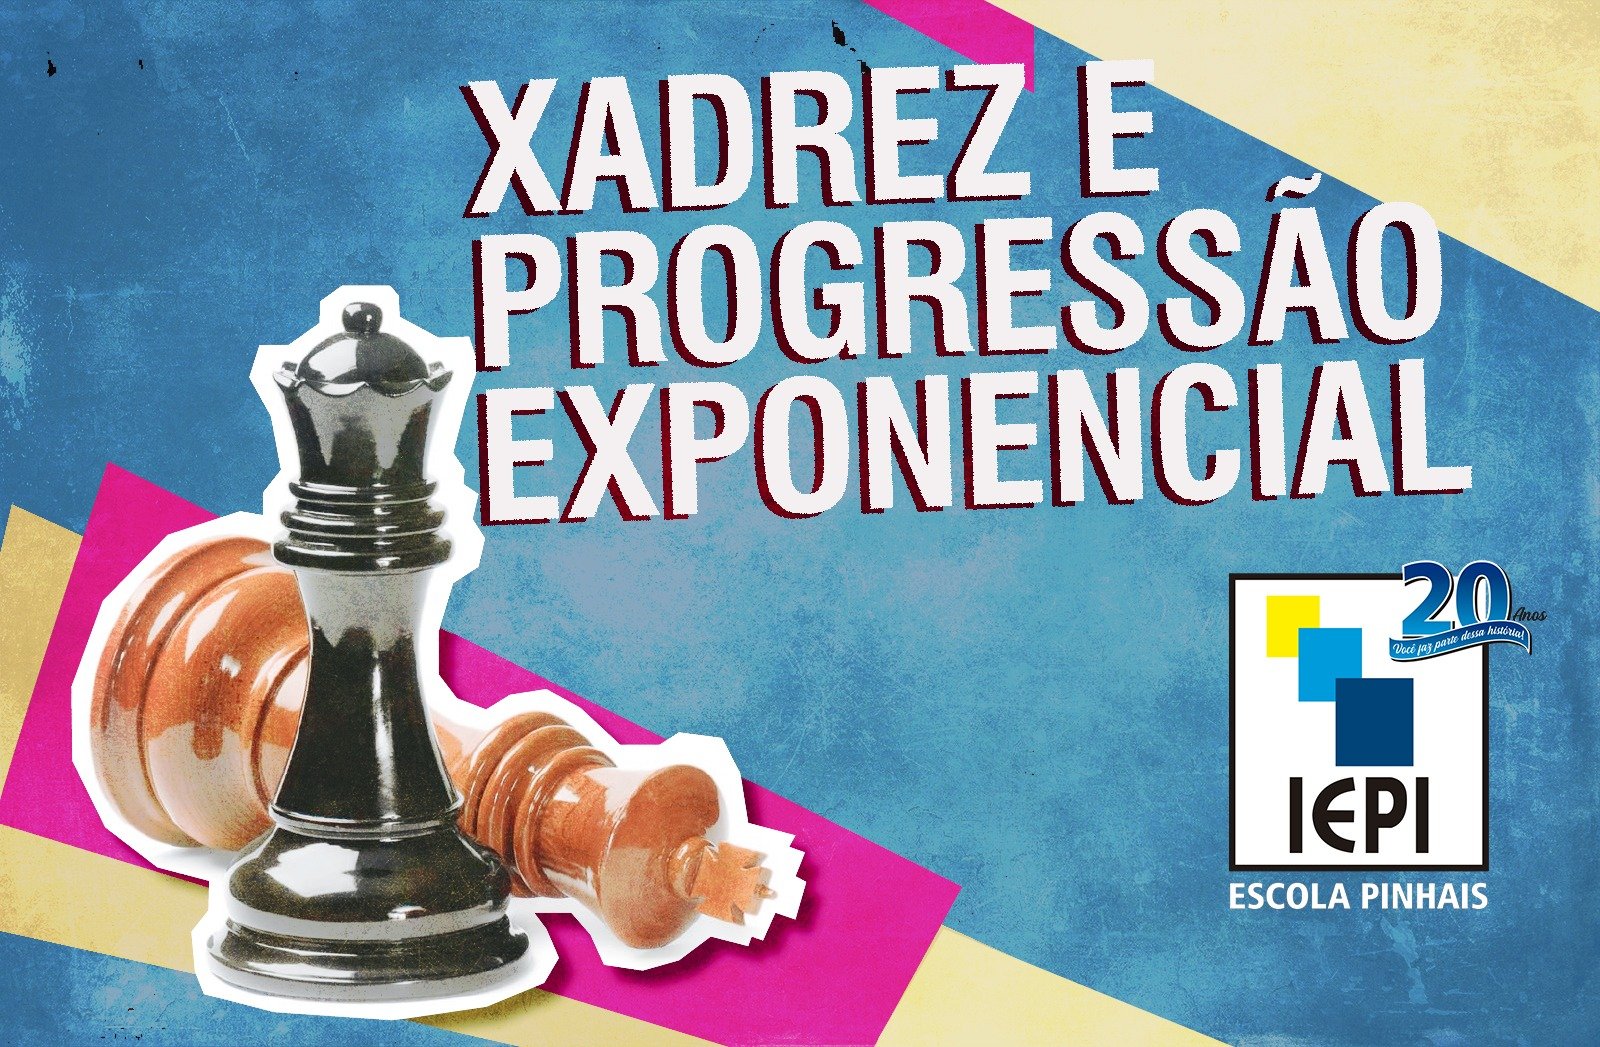 Xadrez e progressão exponencial: o que tem a ver? - Escola em Pinhais IEPI